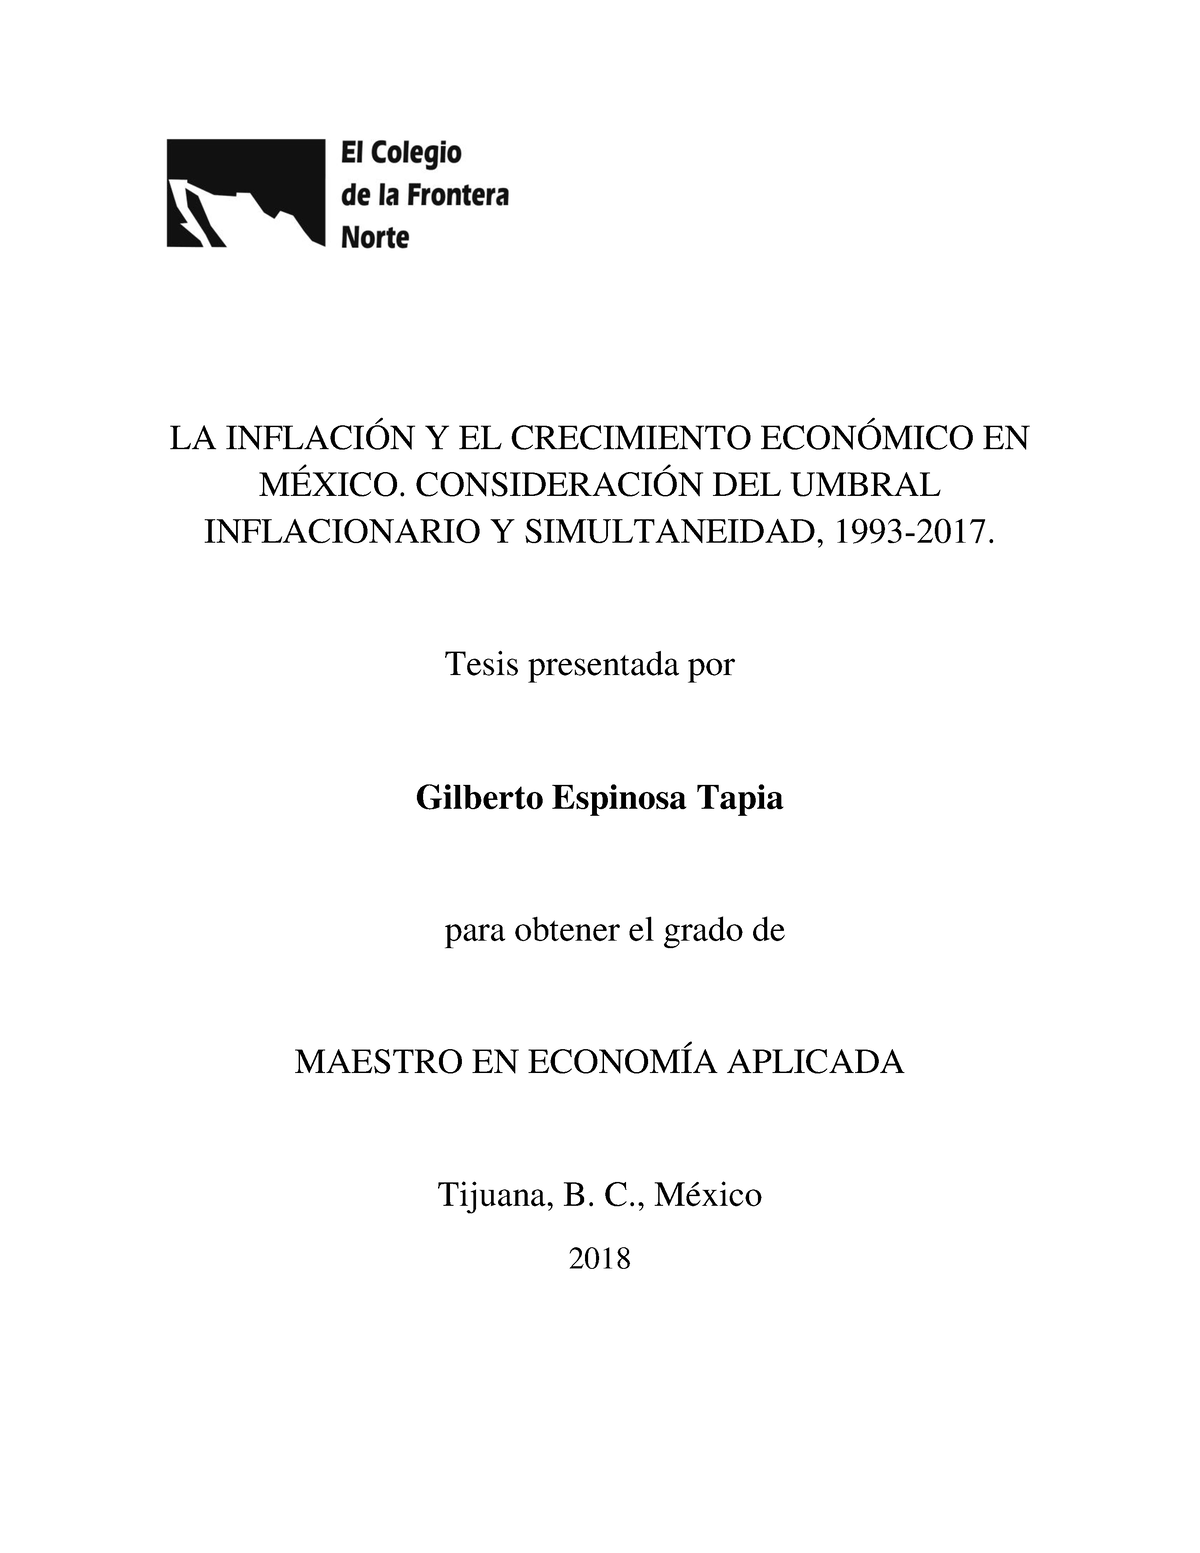 Tesis Espinosa Tapia Gilberto - LA INFLACIÓN Y EL CRECIMIENTO ECONÓMICO ...